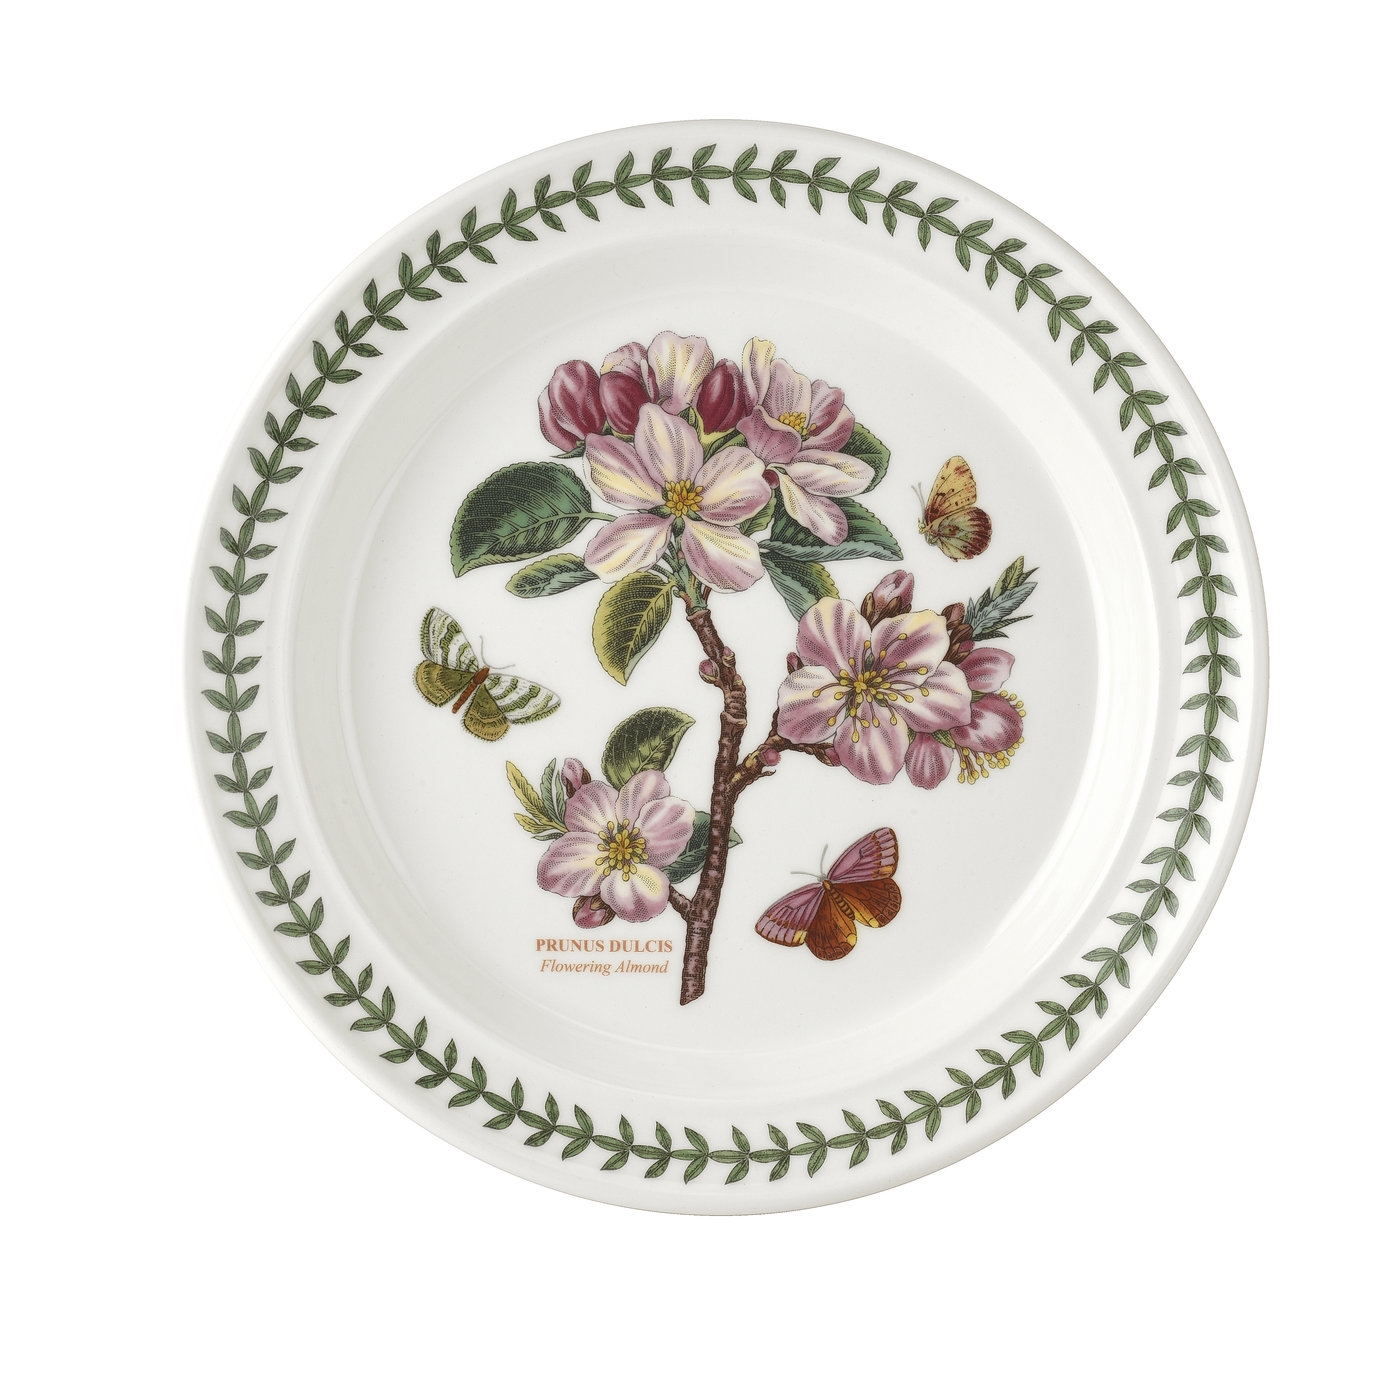 포트메리온 '보타닉 가든' 디너 접시 Portmeirion Botanic Garden 10.5 Inch Dinner Plate (Flowering Almond)